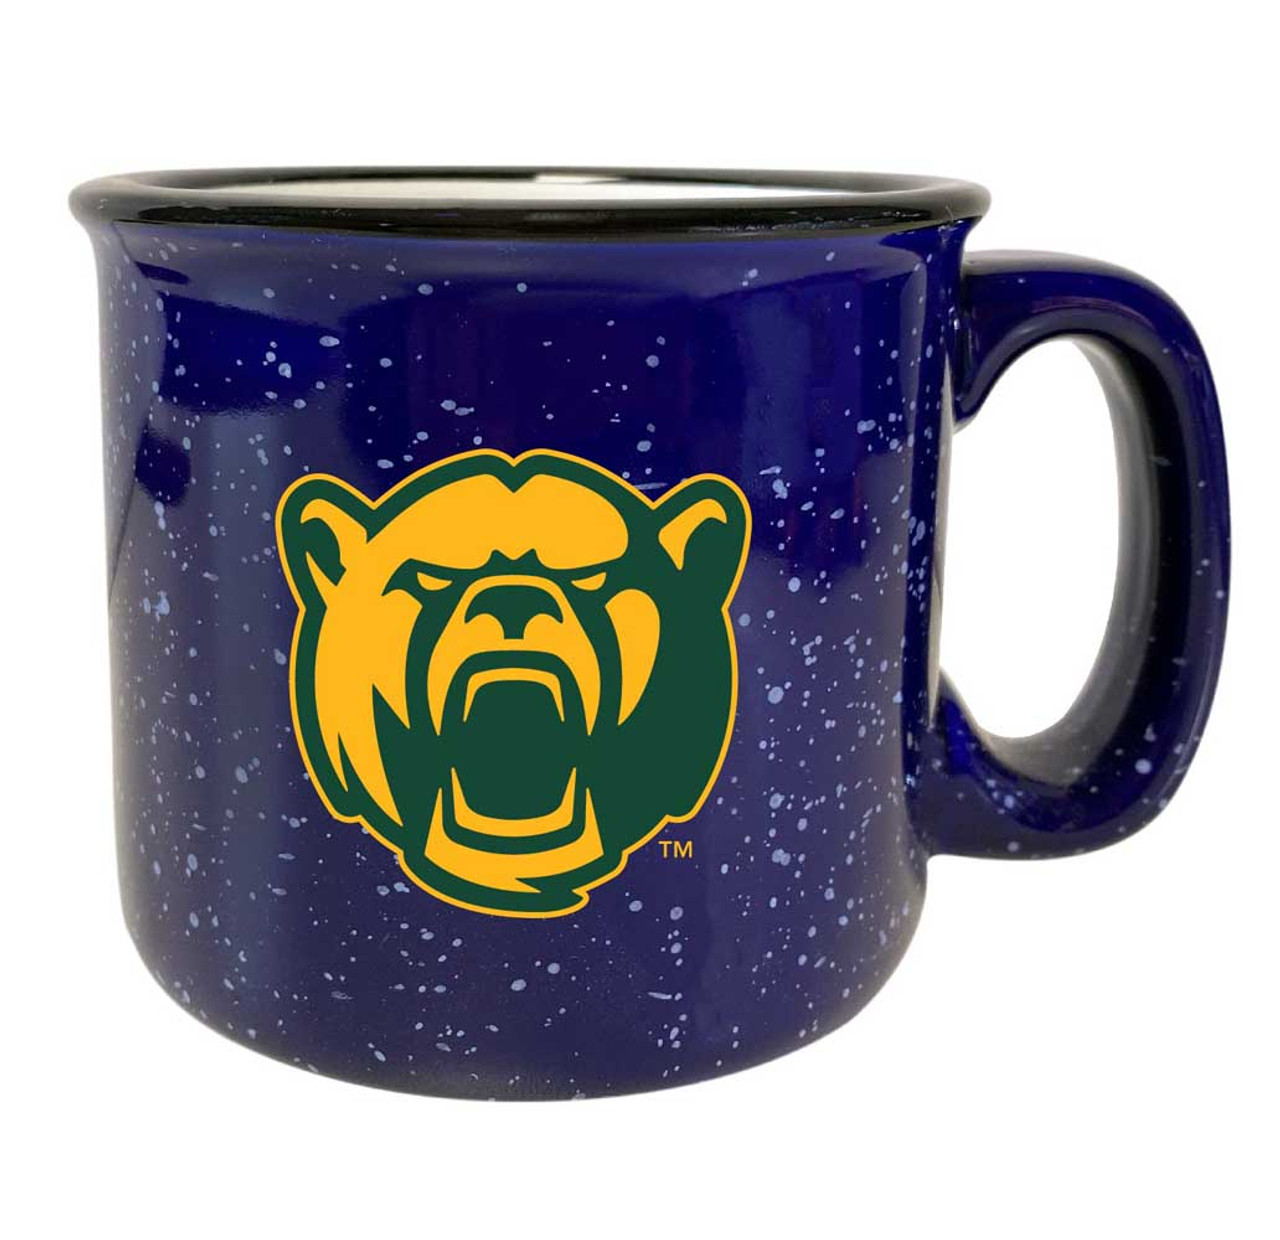 Baylor Bears Speckled Ceramic Camper Coffee Mug (Choose Your Color).